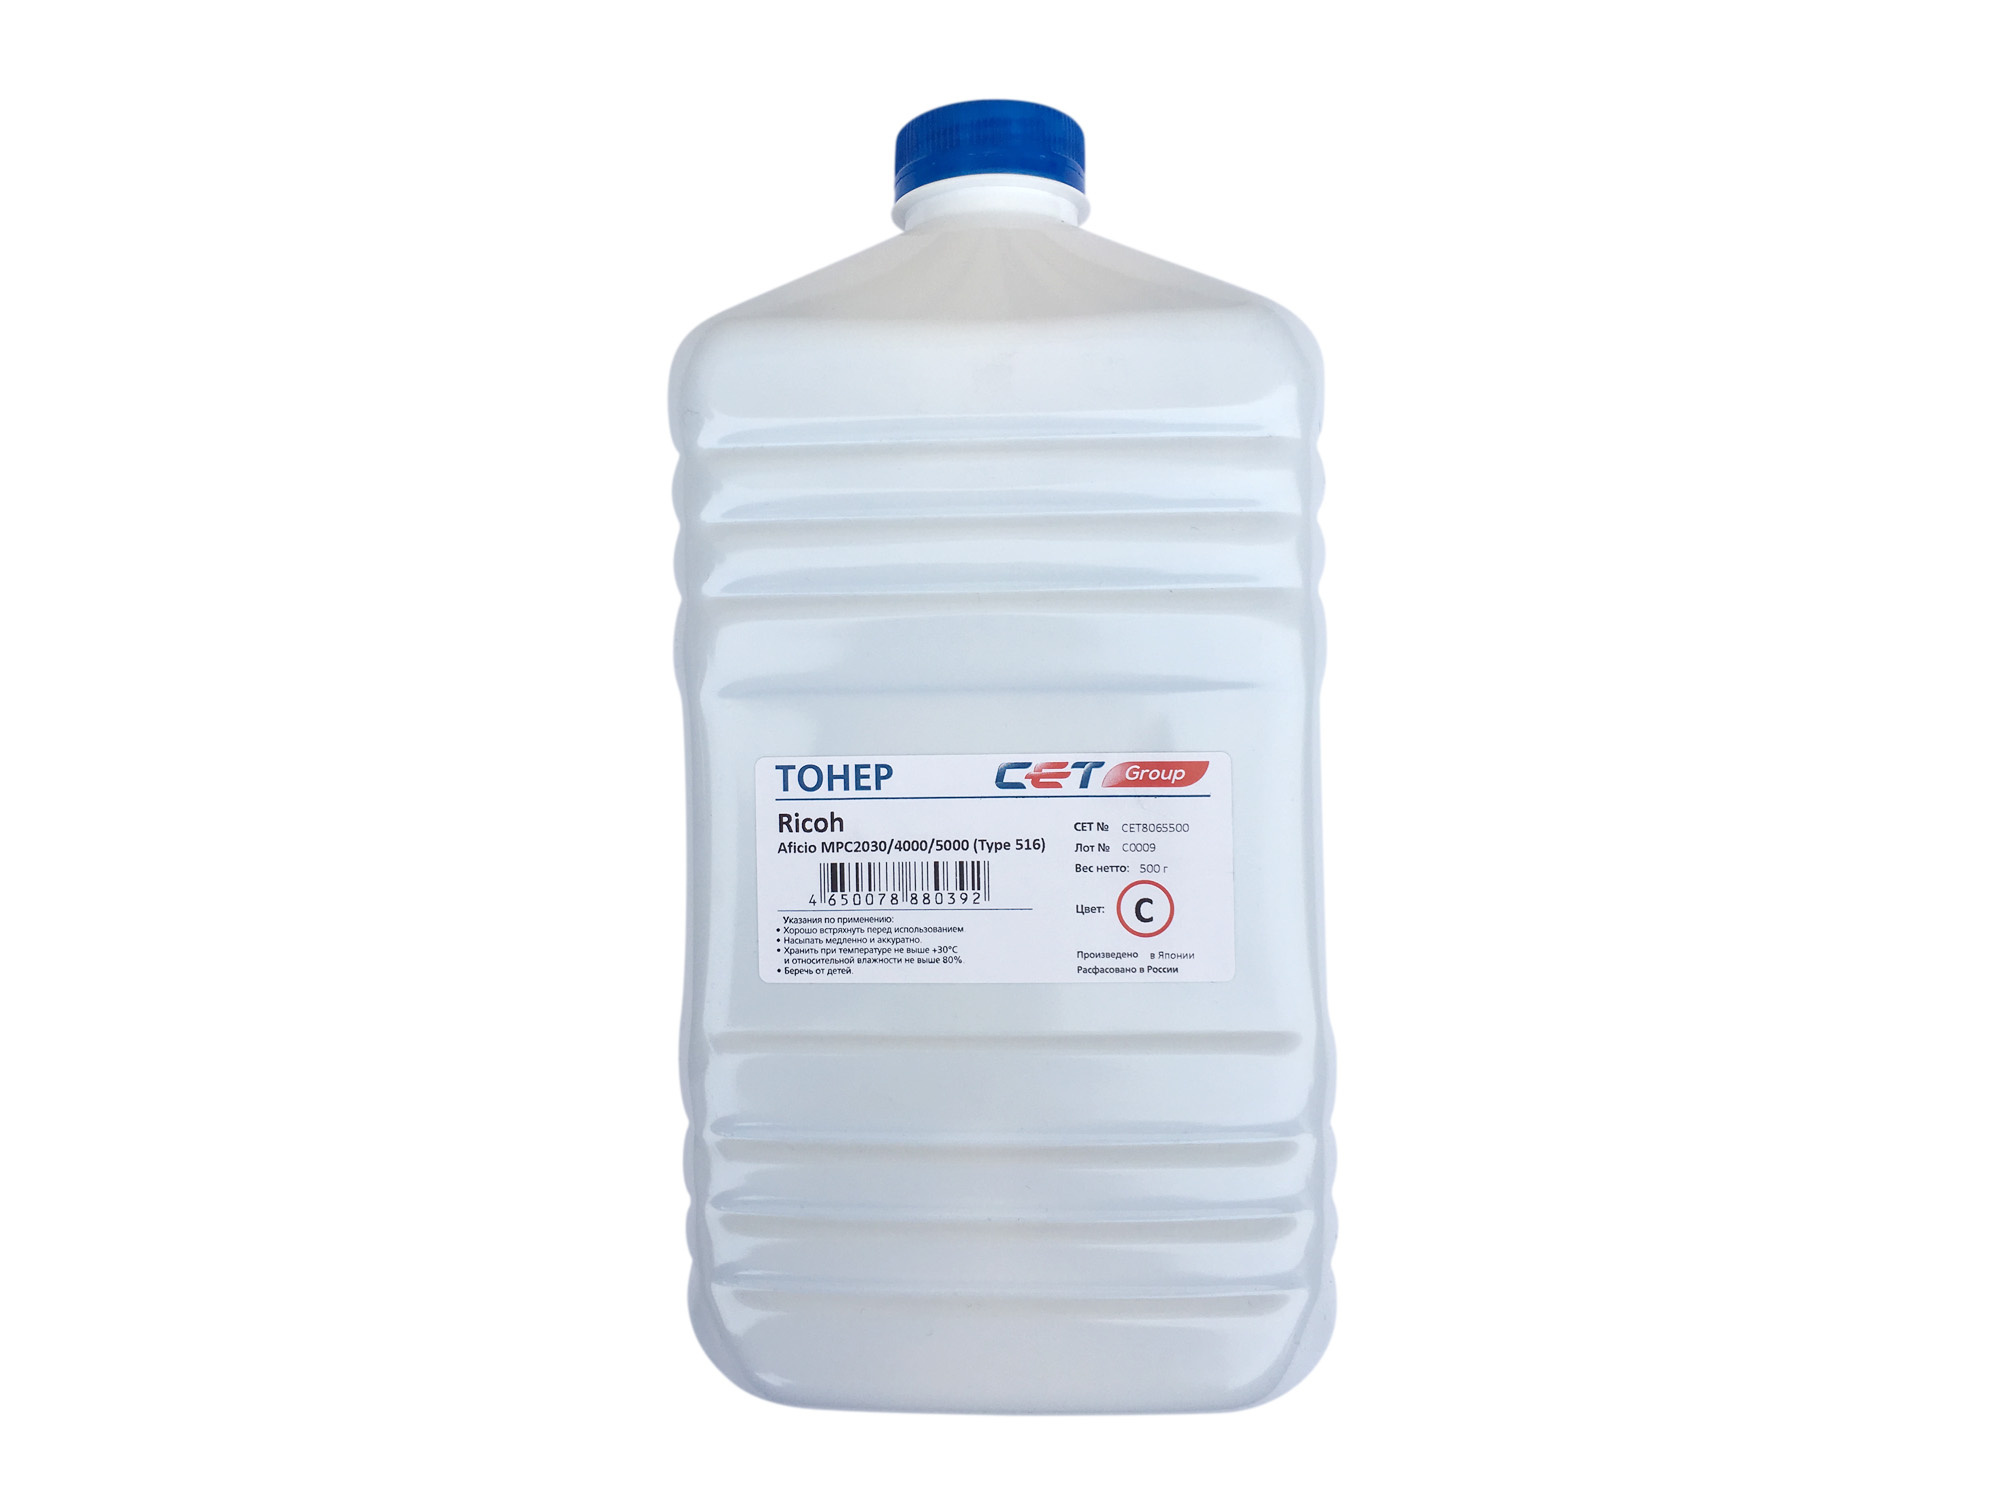 Тонер Cet Type 516 CET8065500 голубой бутылка 500гр. для принтера Ricoh Aficio MPC2030/4000/5000